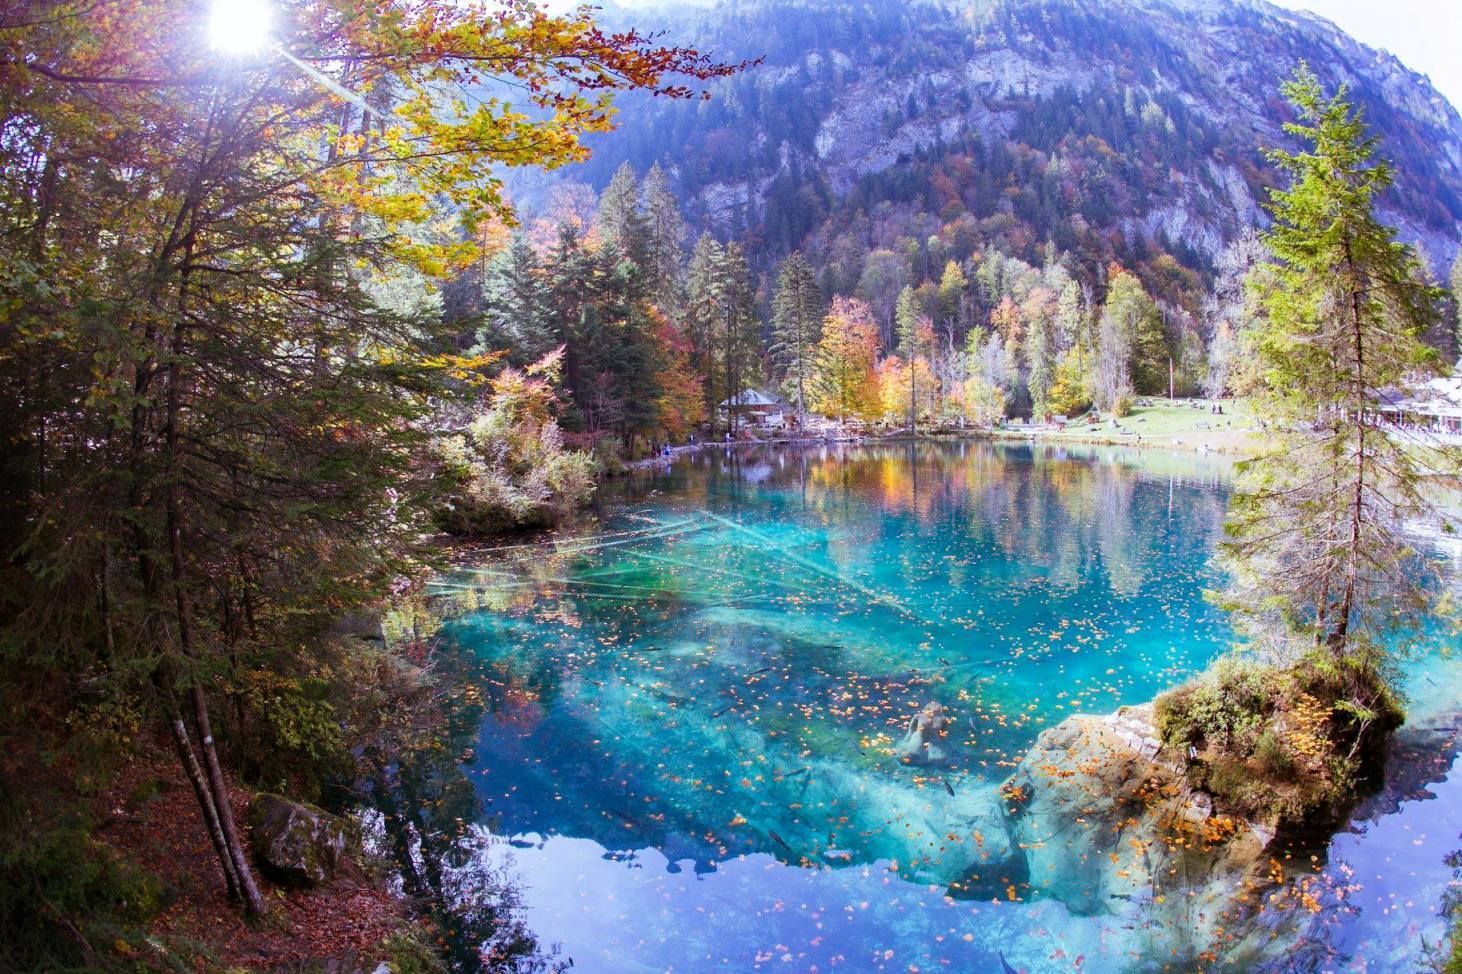 Autumn Glory at Blausee Switzerland beautiful blue lake